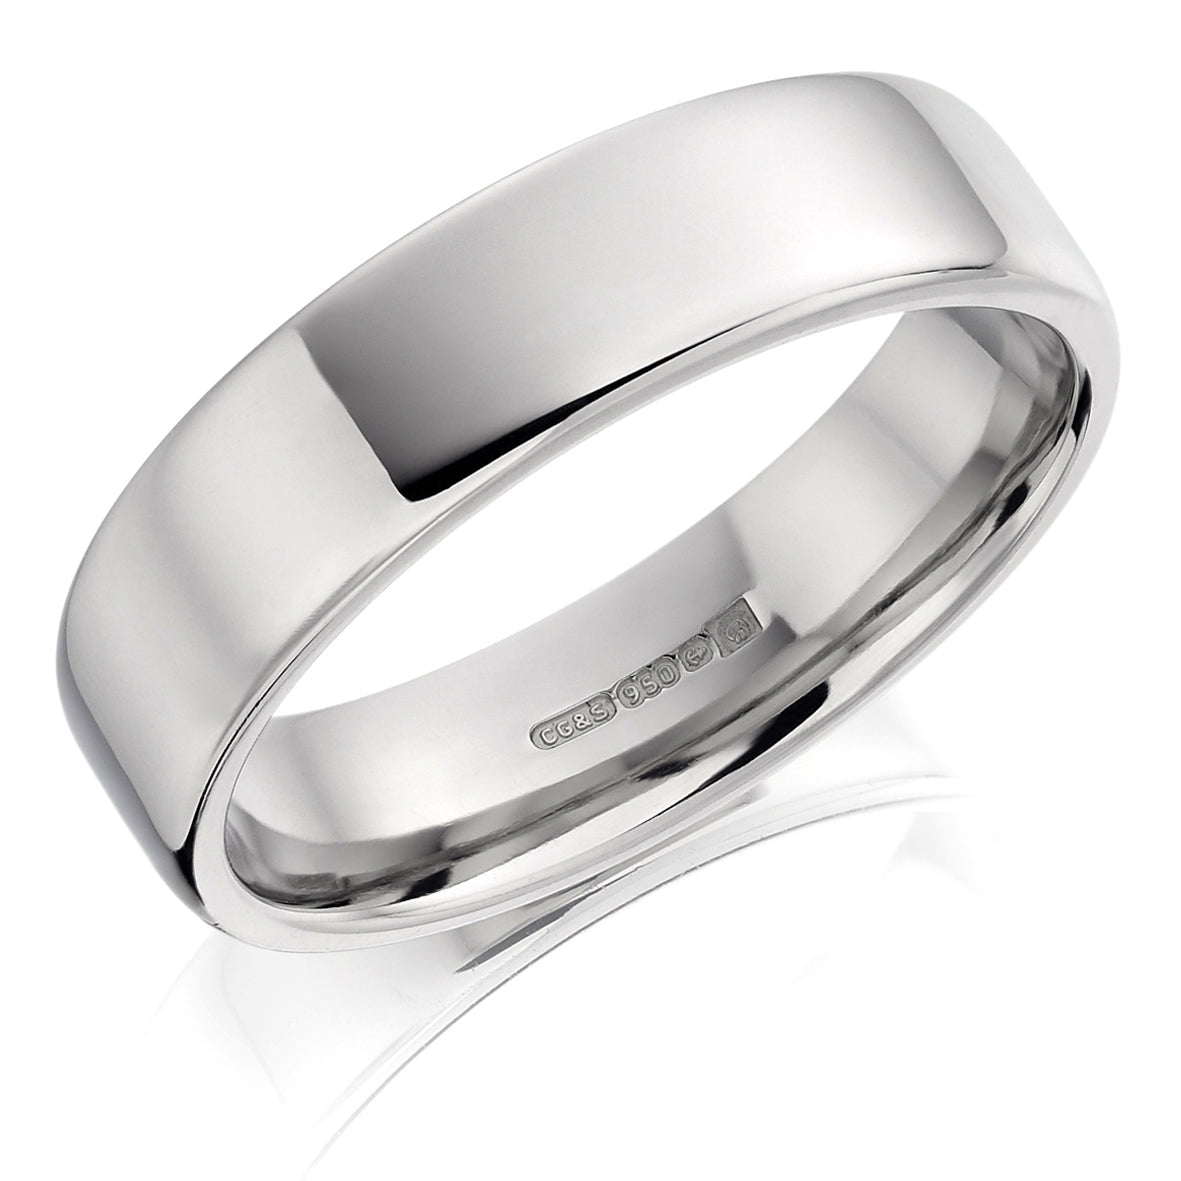 Men's 9ct White Gold 6mm Flat Court Wedding Ring